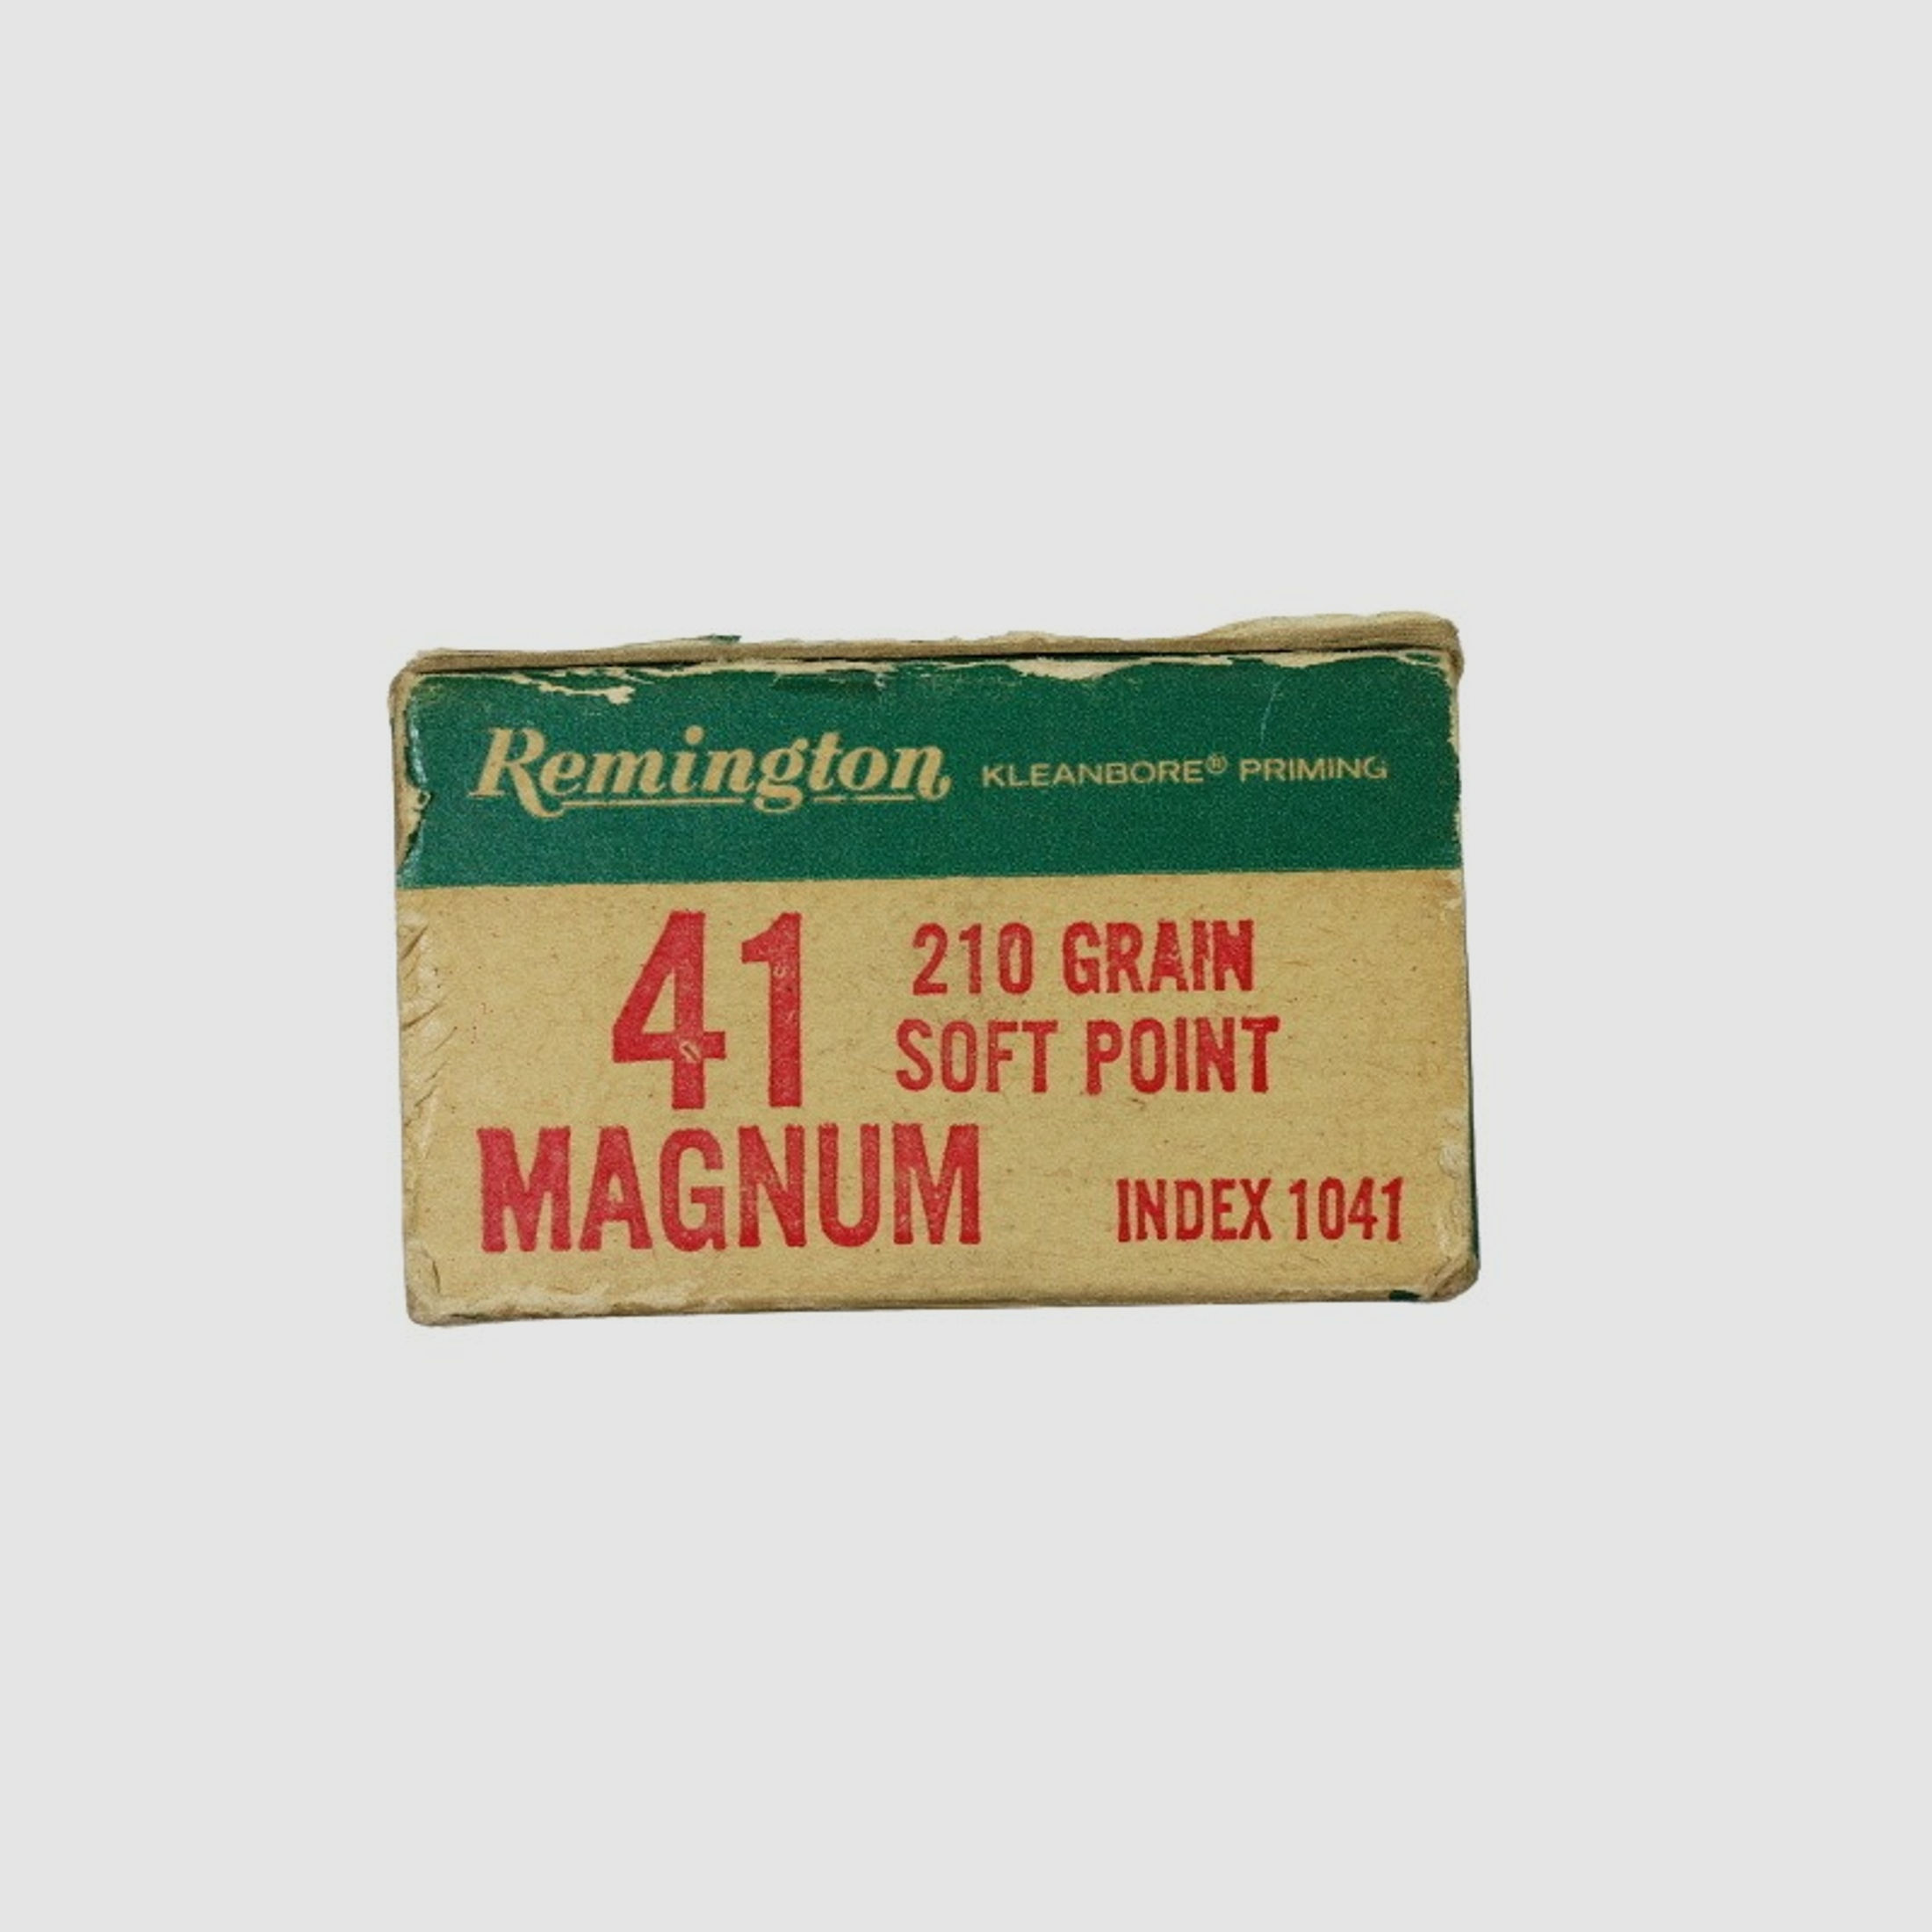 Revolverpatronen Remington 41 Mag. Soft Point 13,61g. 210 Gr. Index 1041  !!!